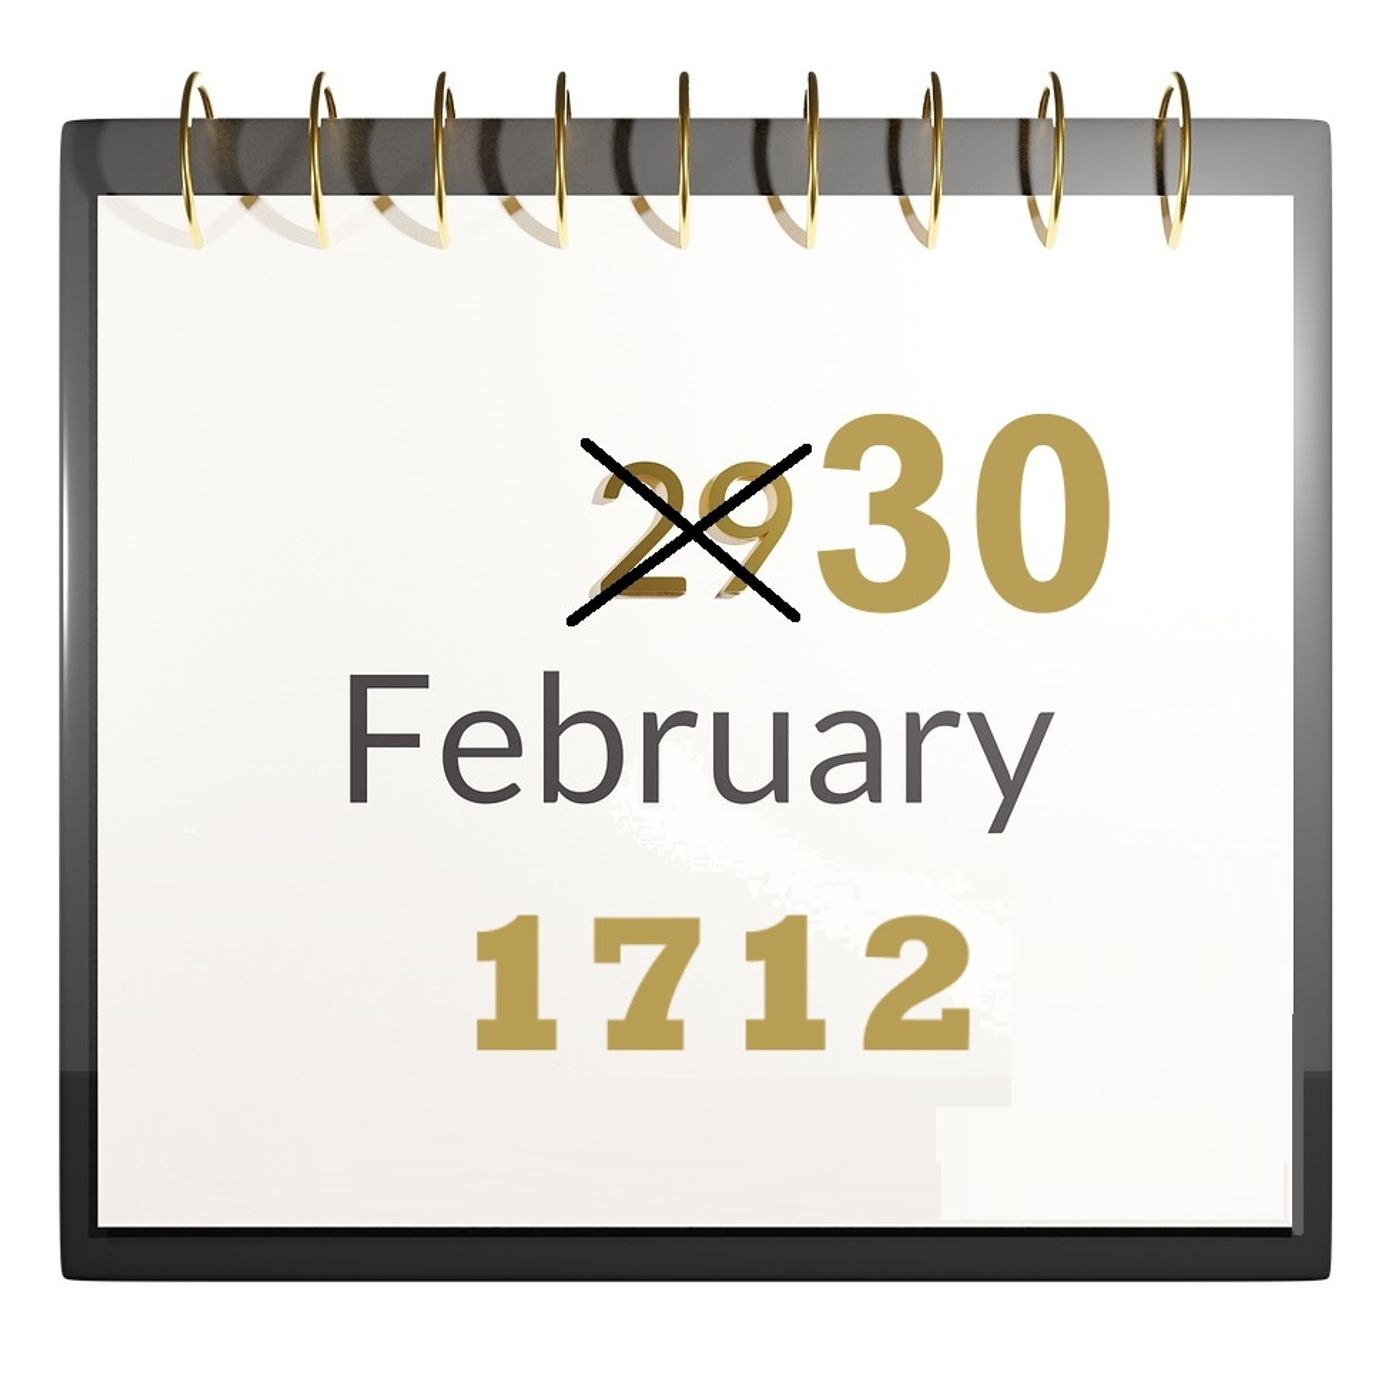 Il crogiuolo. Puntata 4 - 30 febbraio 1712, è esistito davvero ma solo in Svezia!